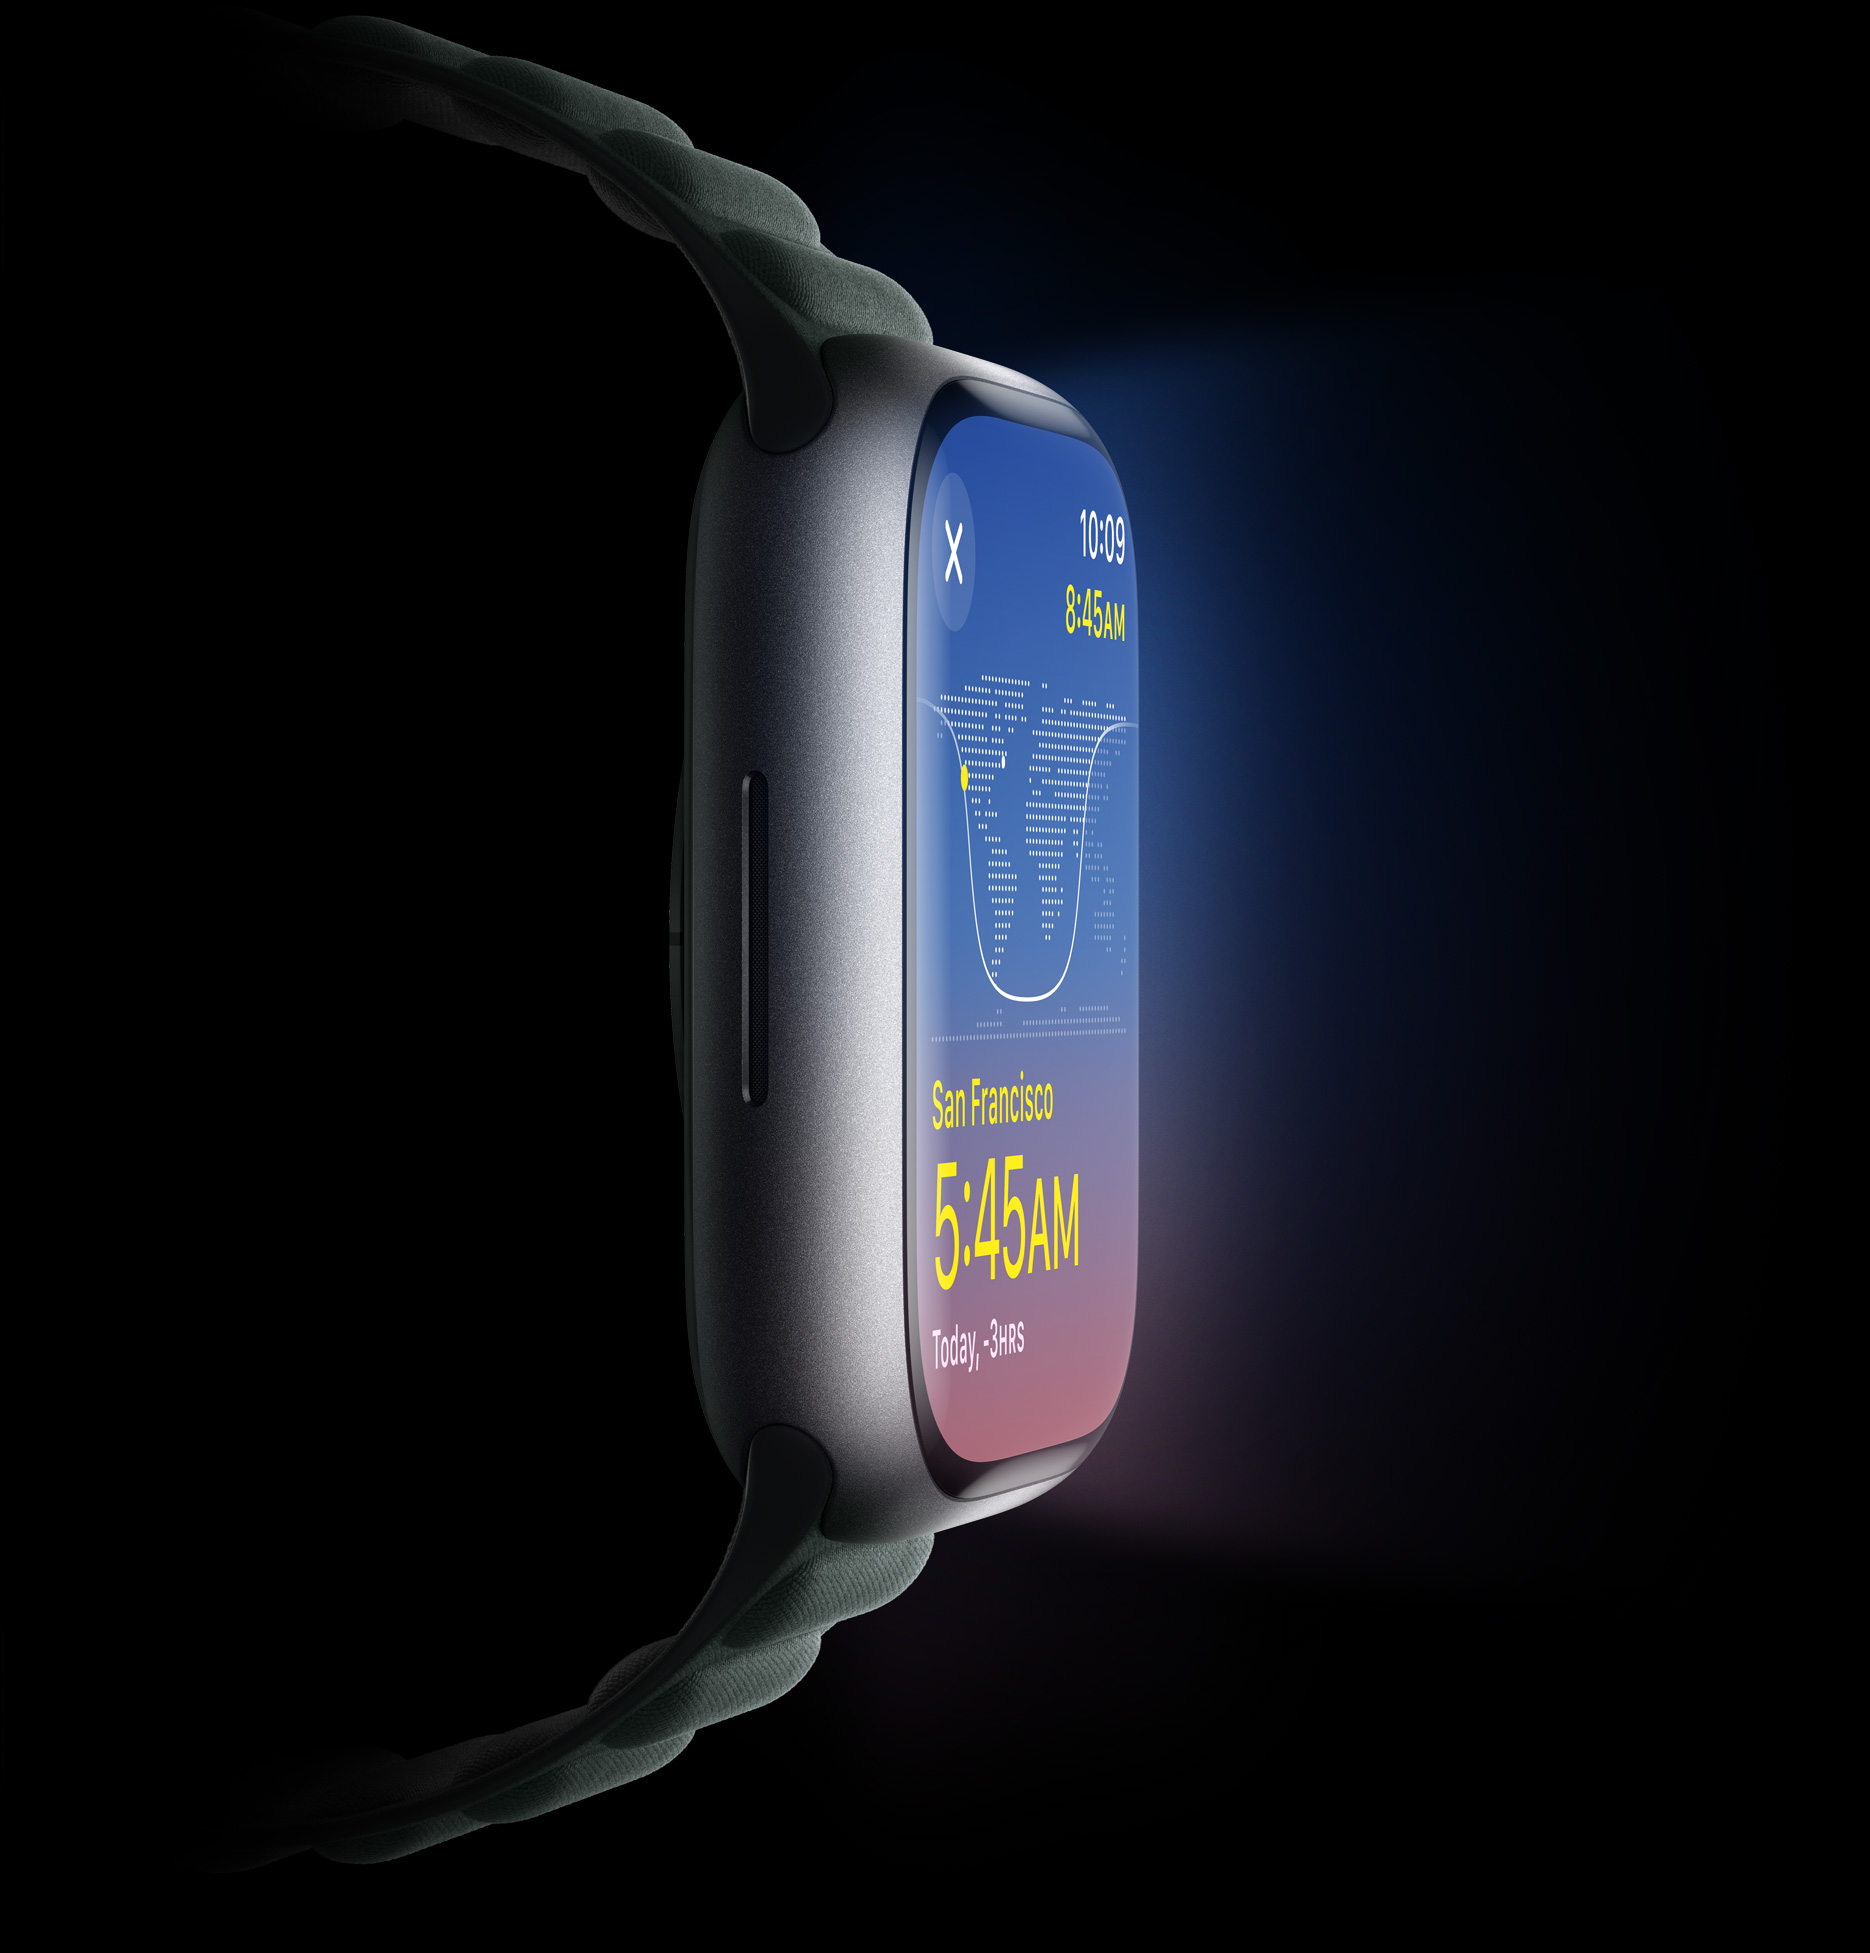 Vue latérale de l’Apple Watch mettant en valeur la luminosité de l’écran.